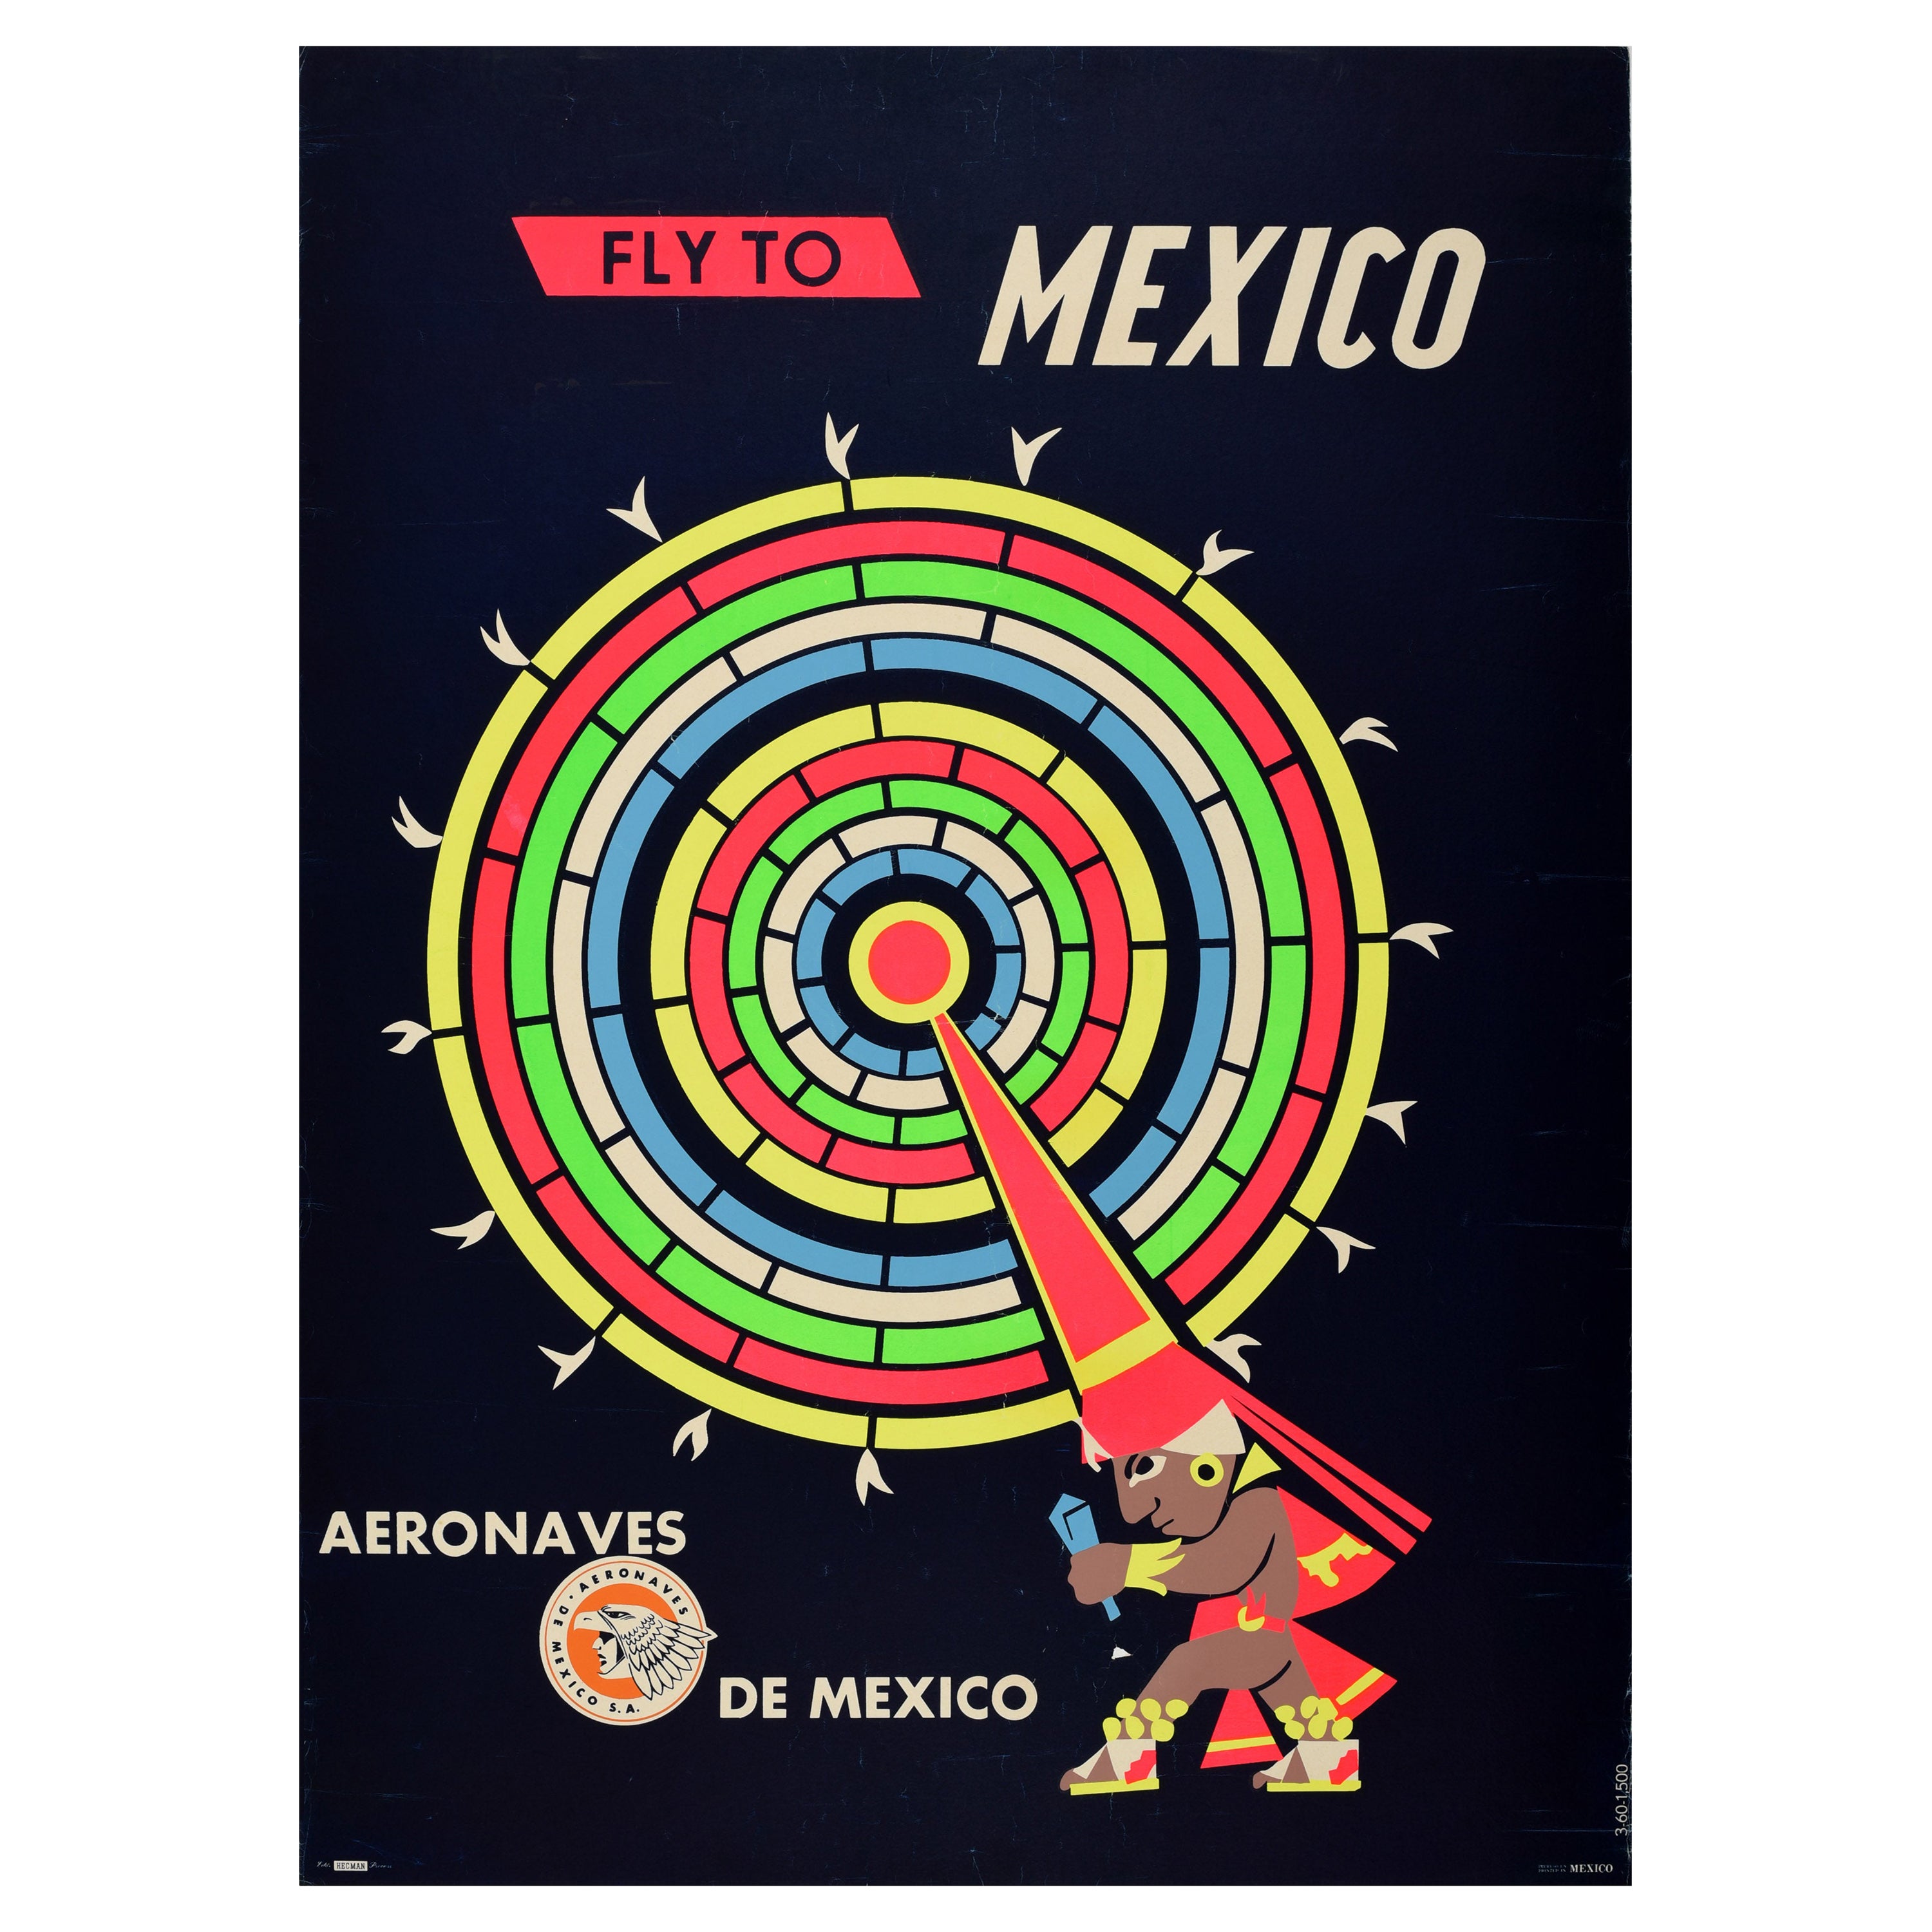 Affiche originale de voyage aérien Fly To Mexico, dessin du calendrier Maya en vente